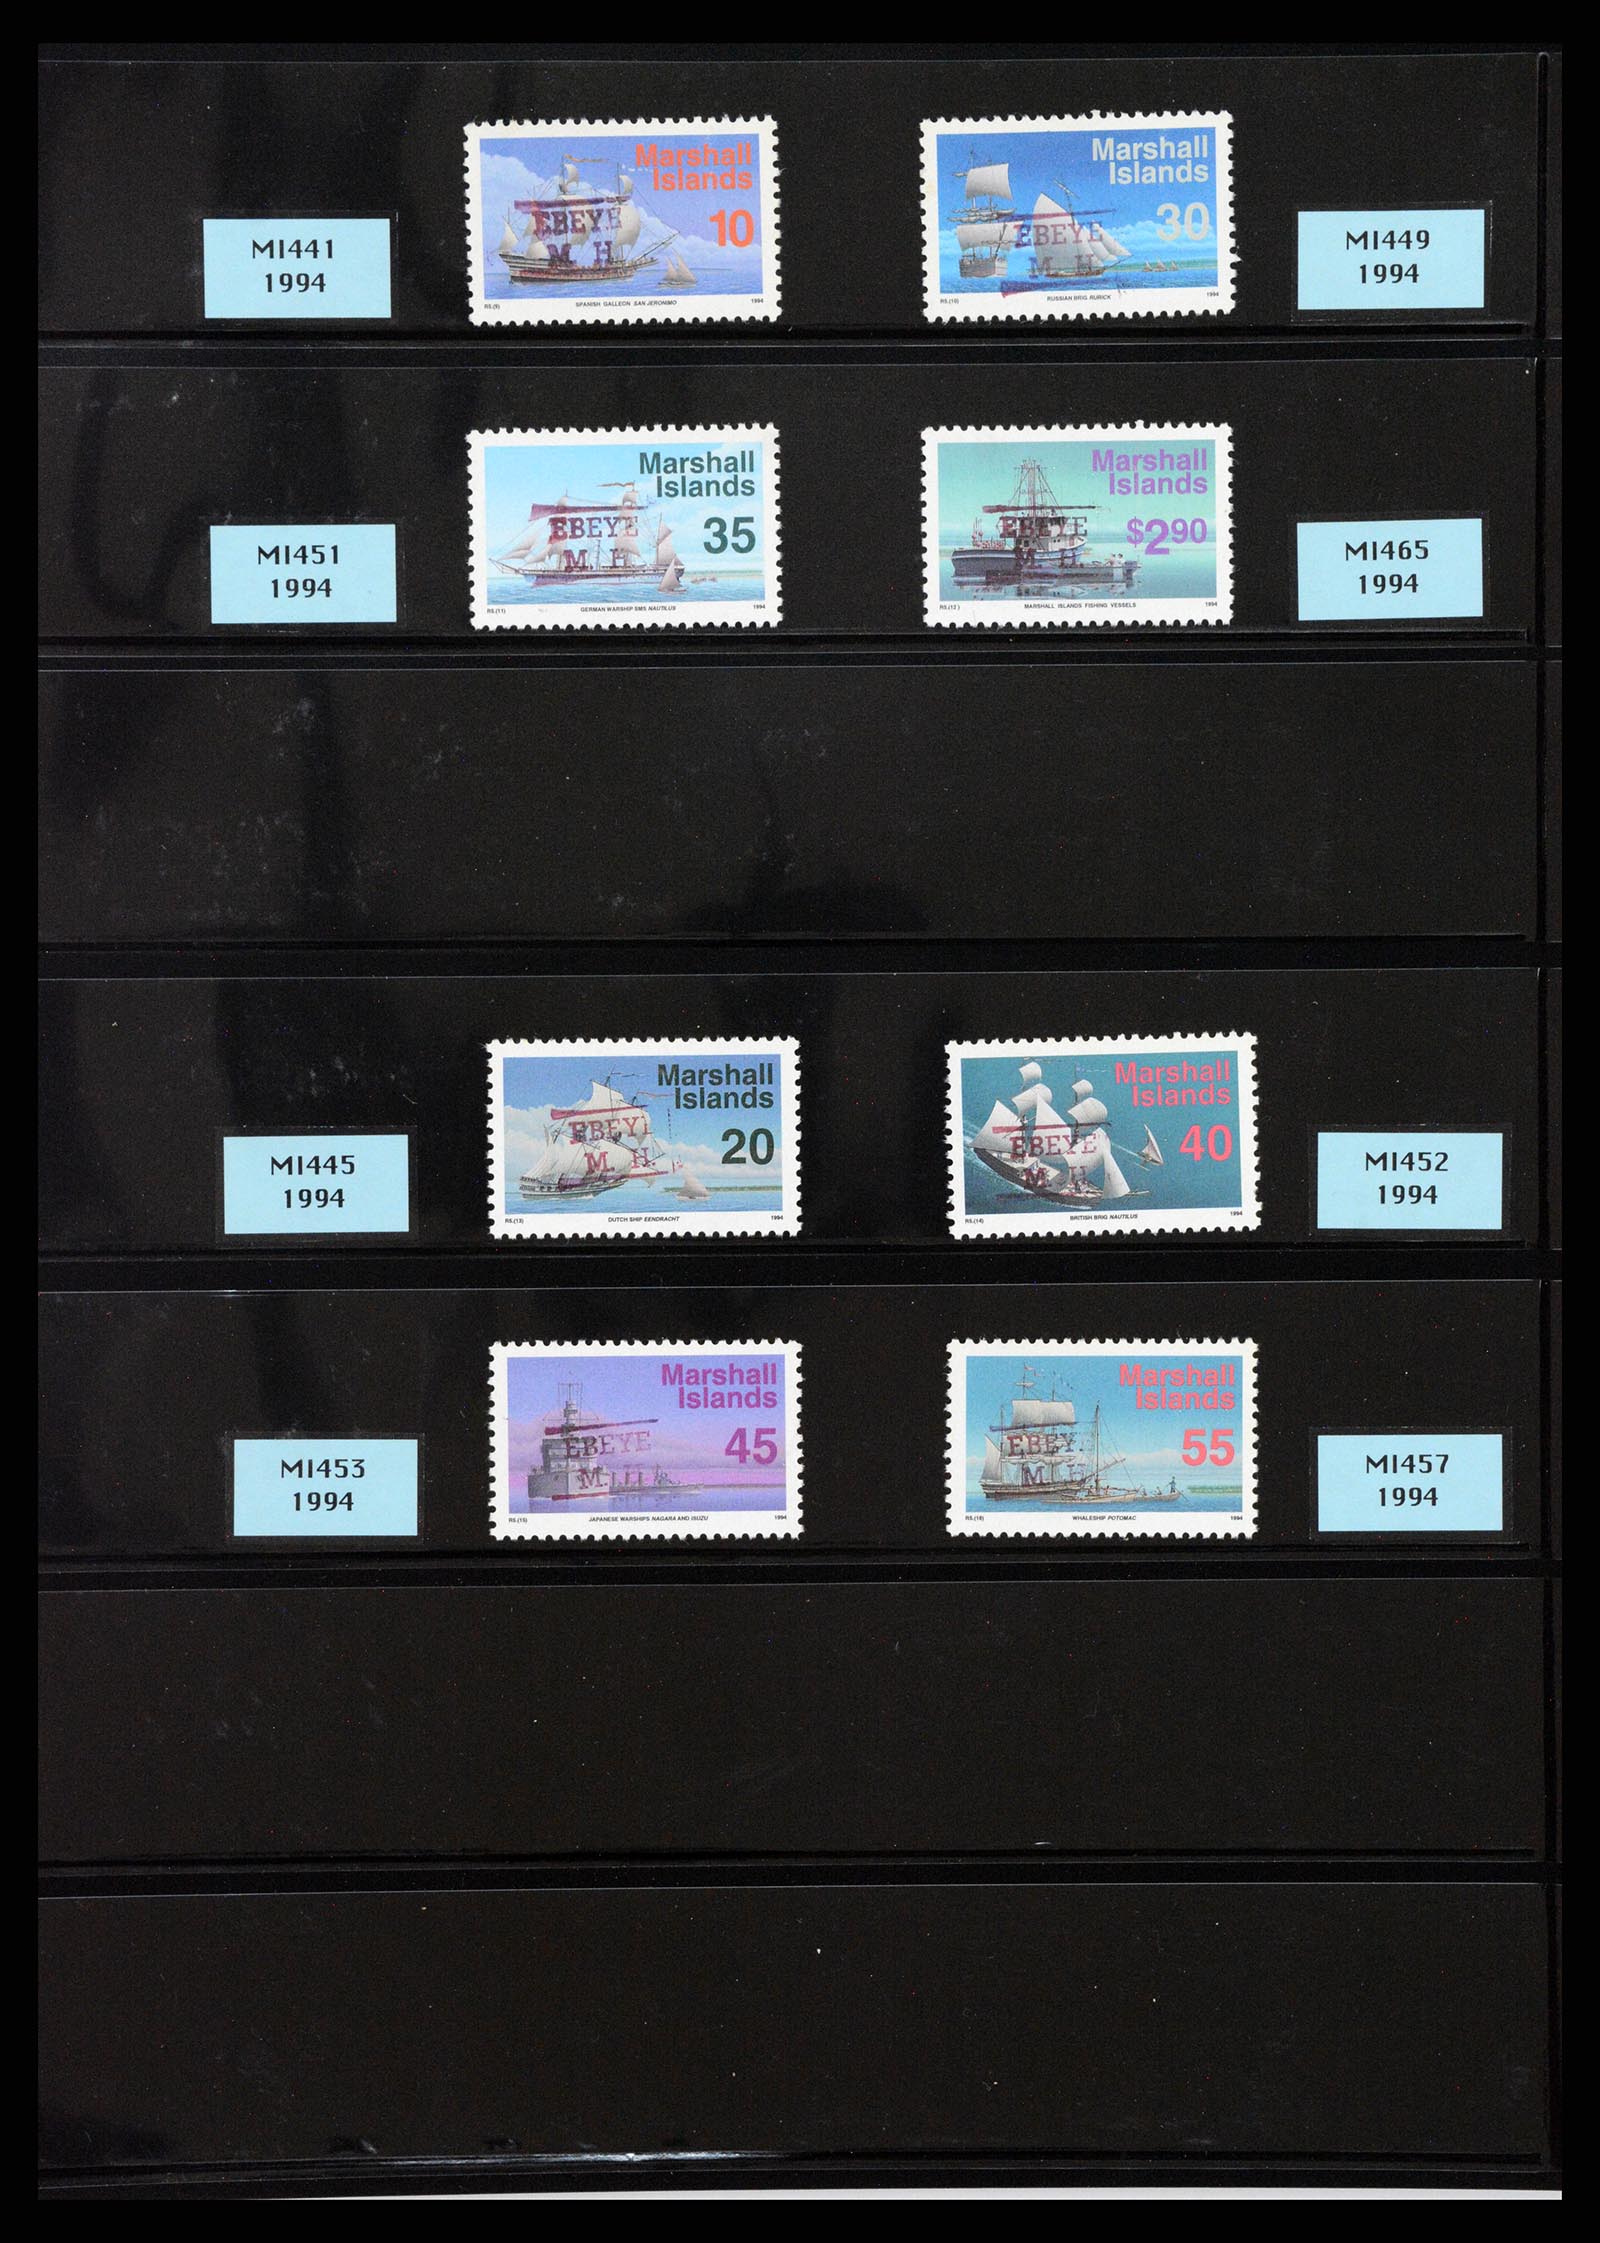 37736 005 - Postzegelverzameling 37736 USA gebieden pre-cancels 1959-1995.